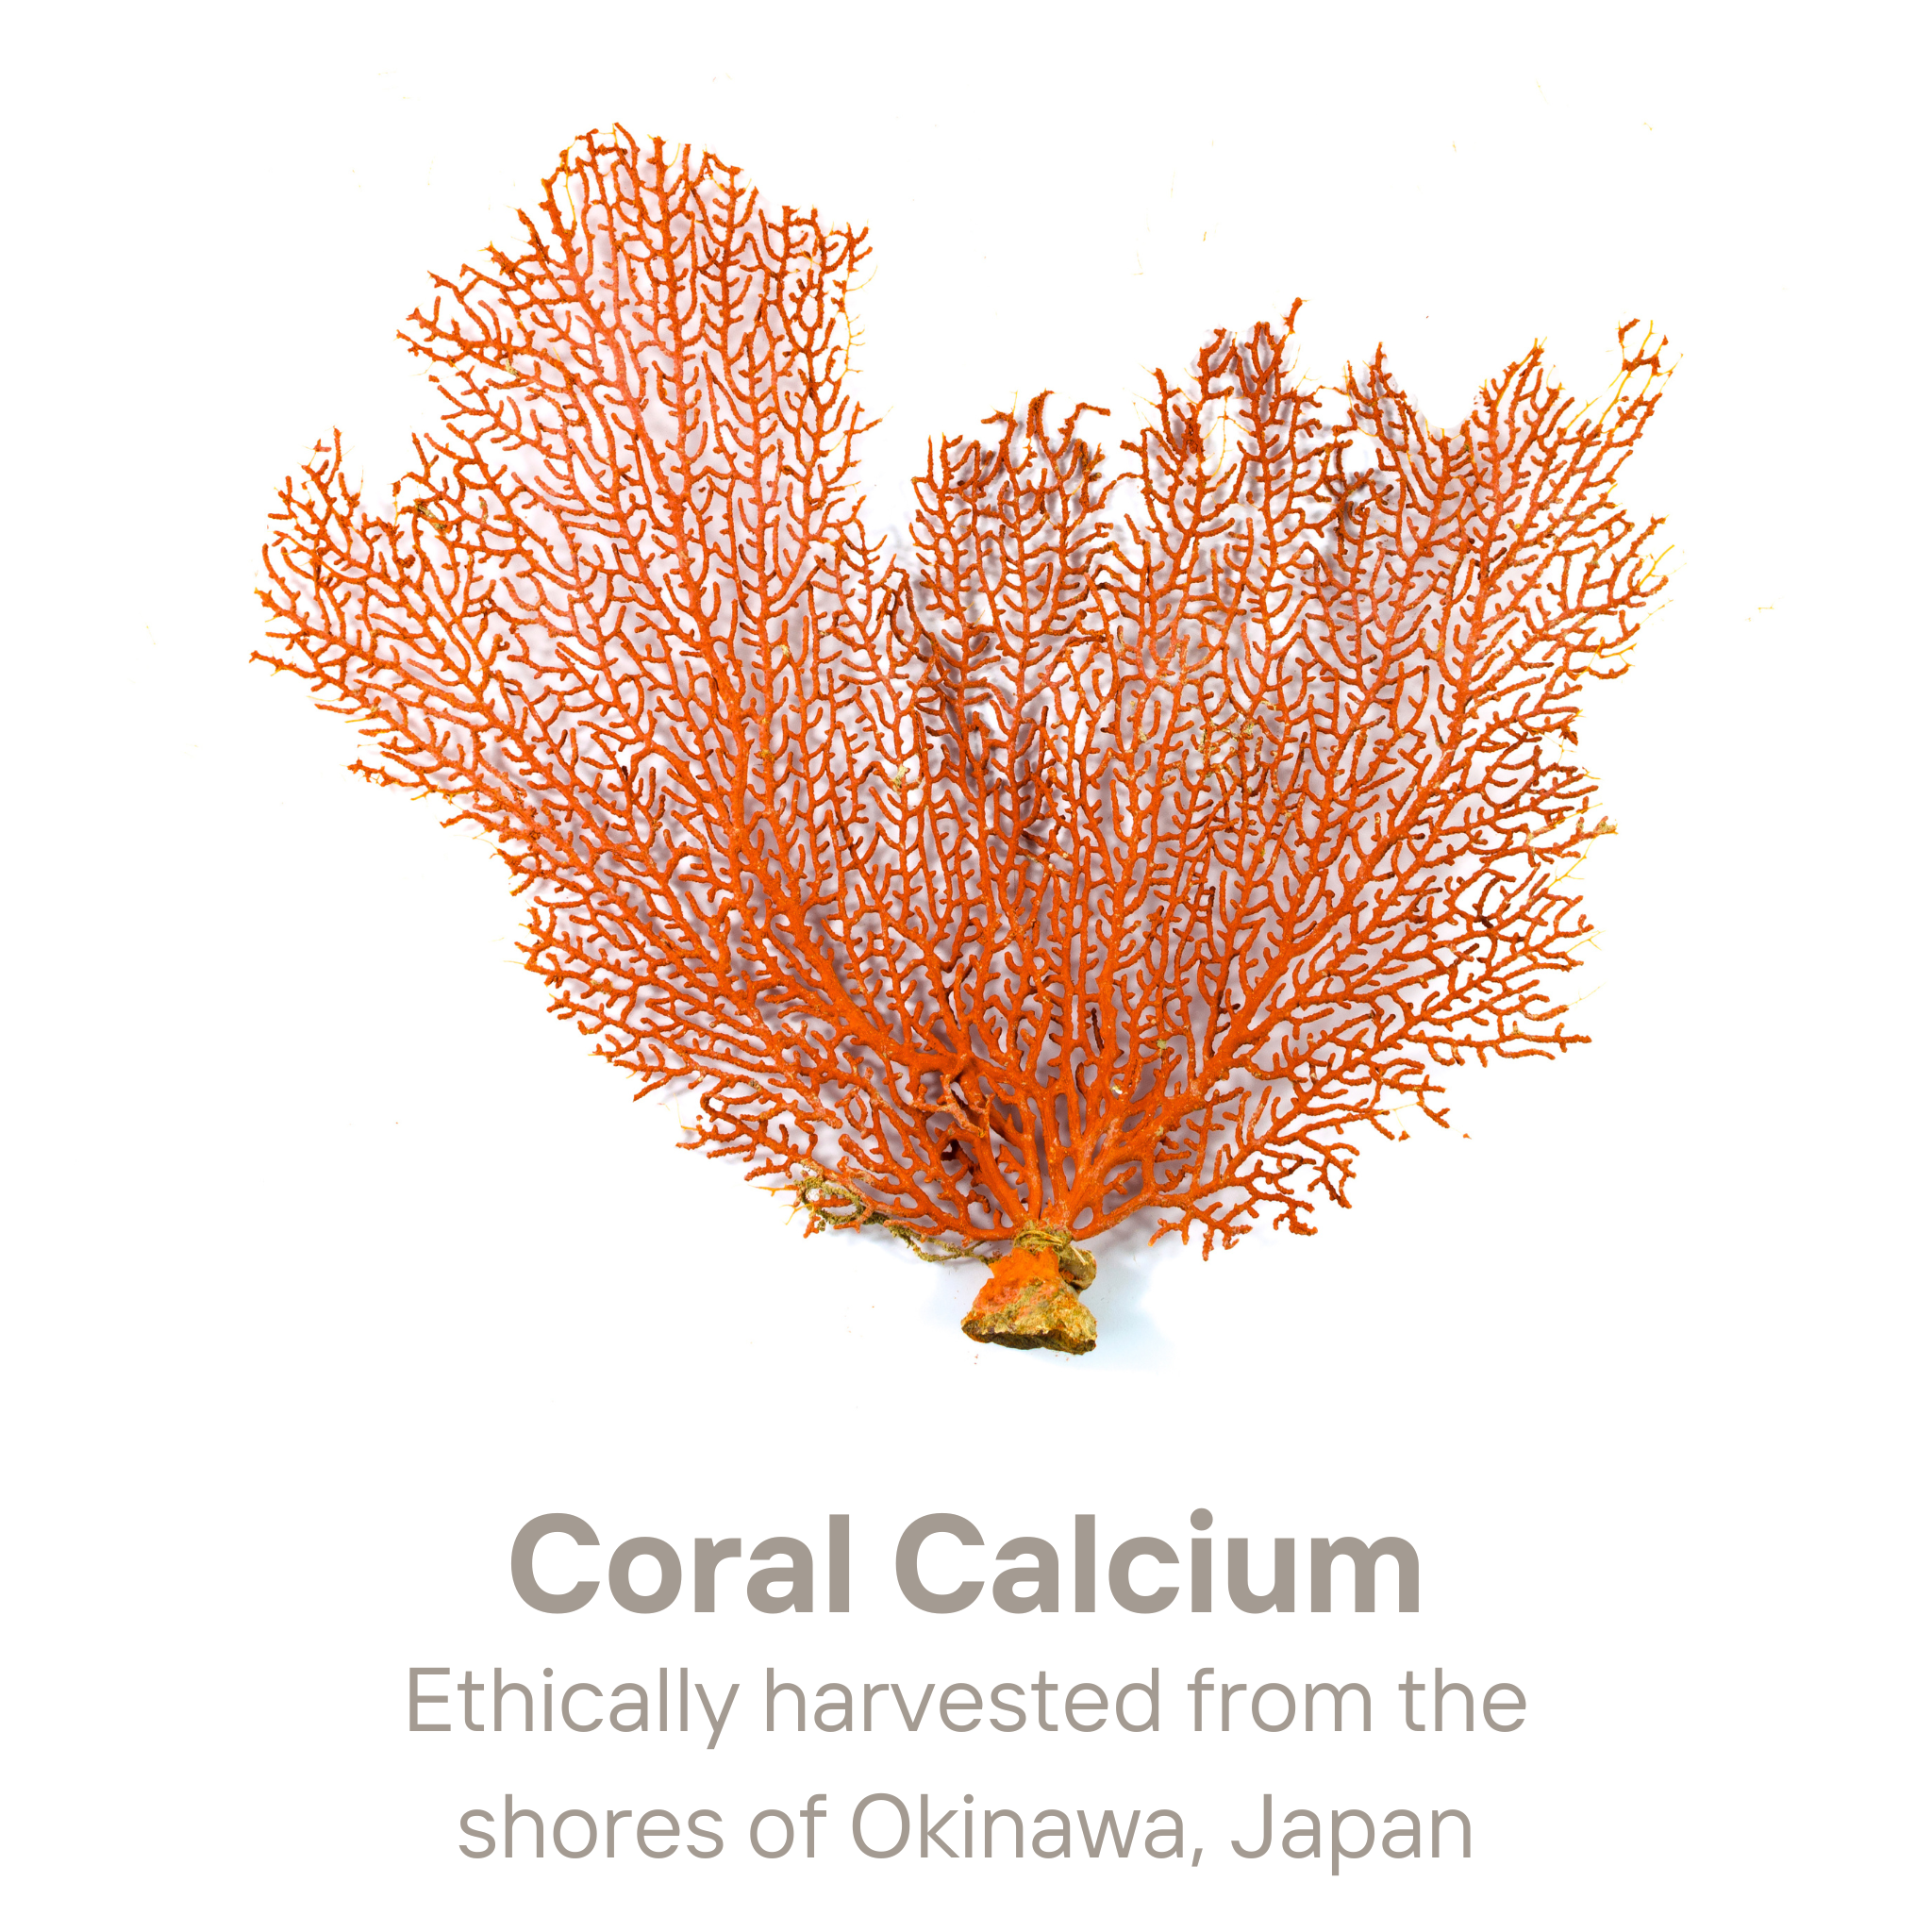 Suplementos de calcio de coral de Okinawa - Salud ósea inmune y de apoyo con magnesio, zinc, potasio, vitaminas y minerales